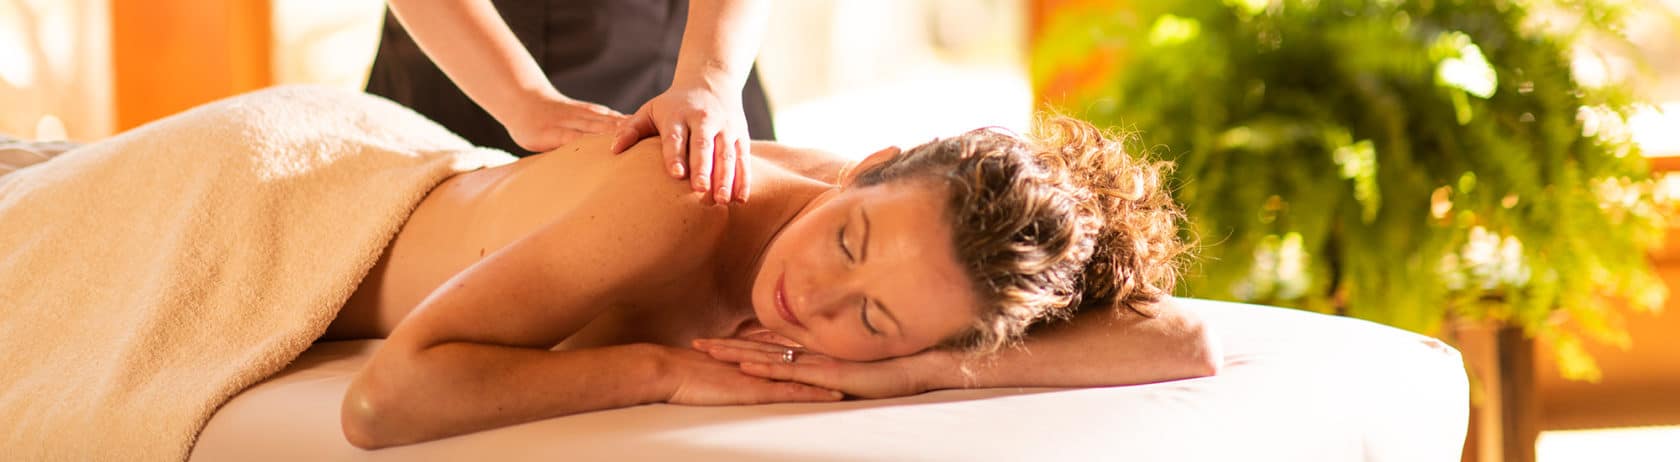 Spa Massage Woman